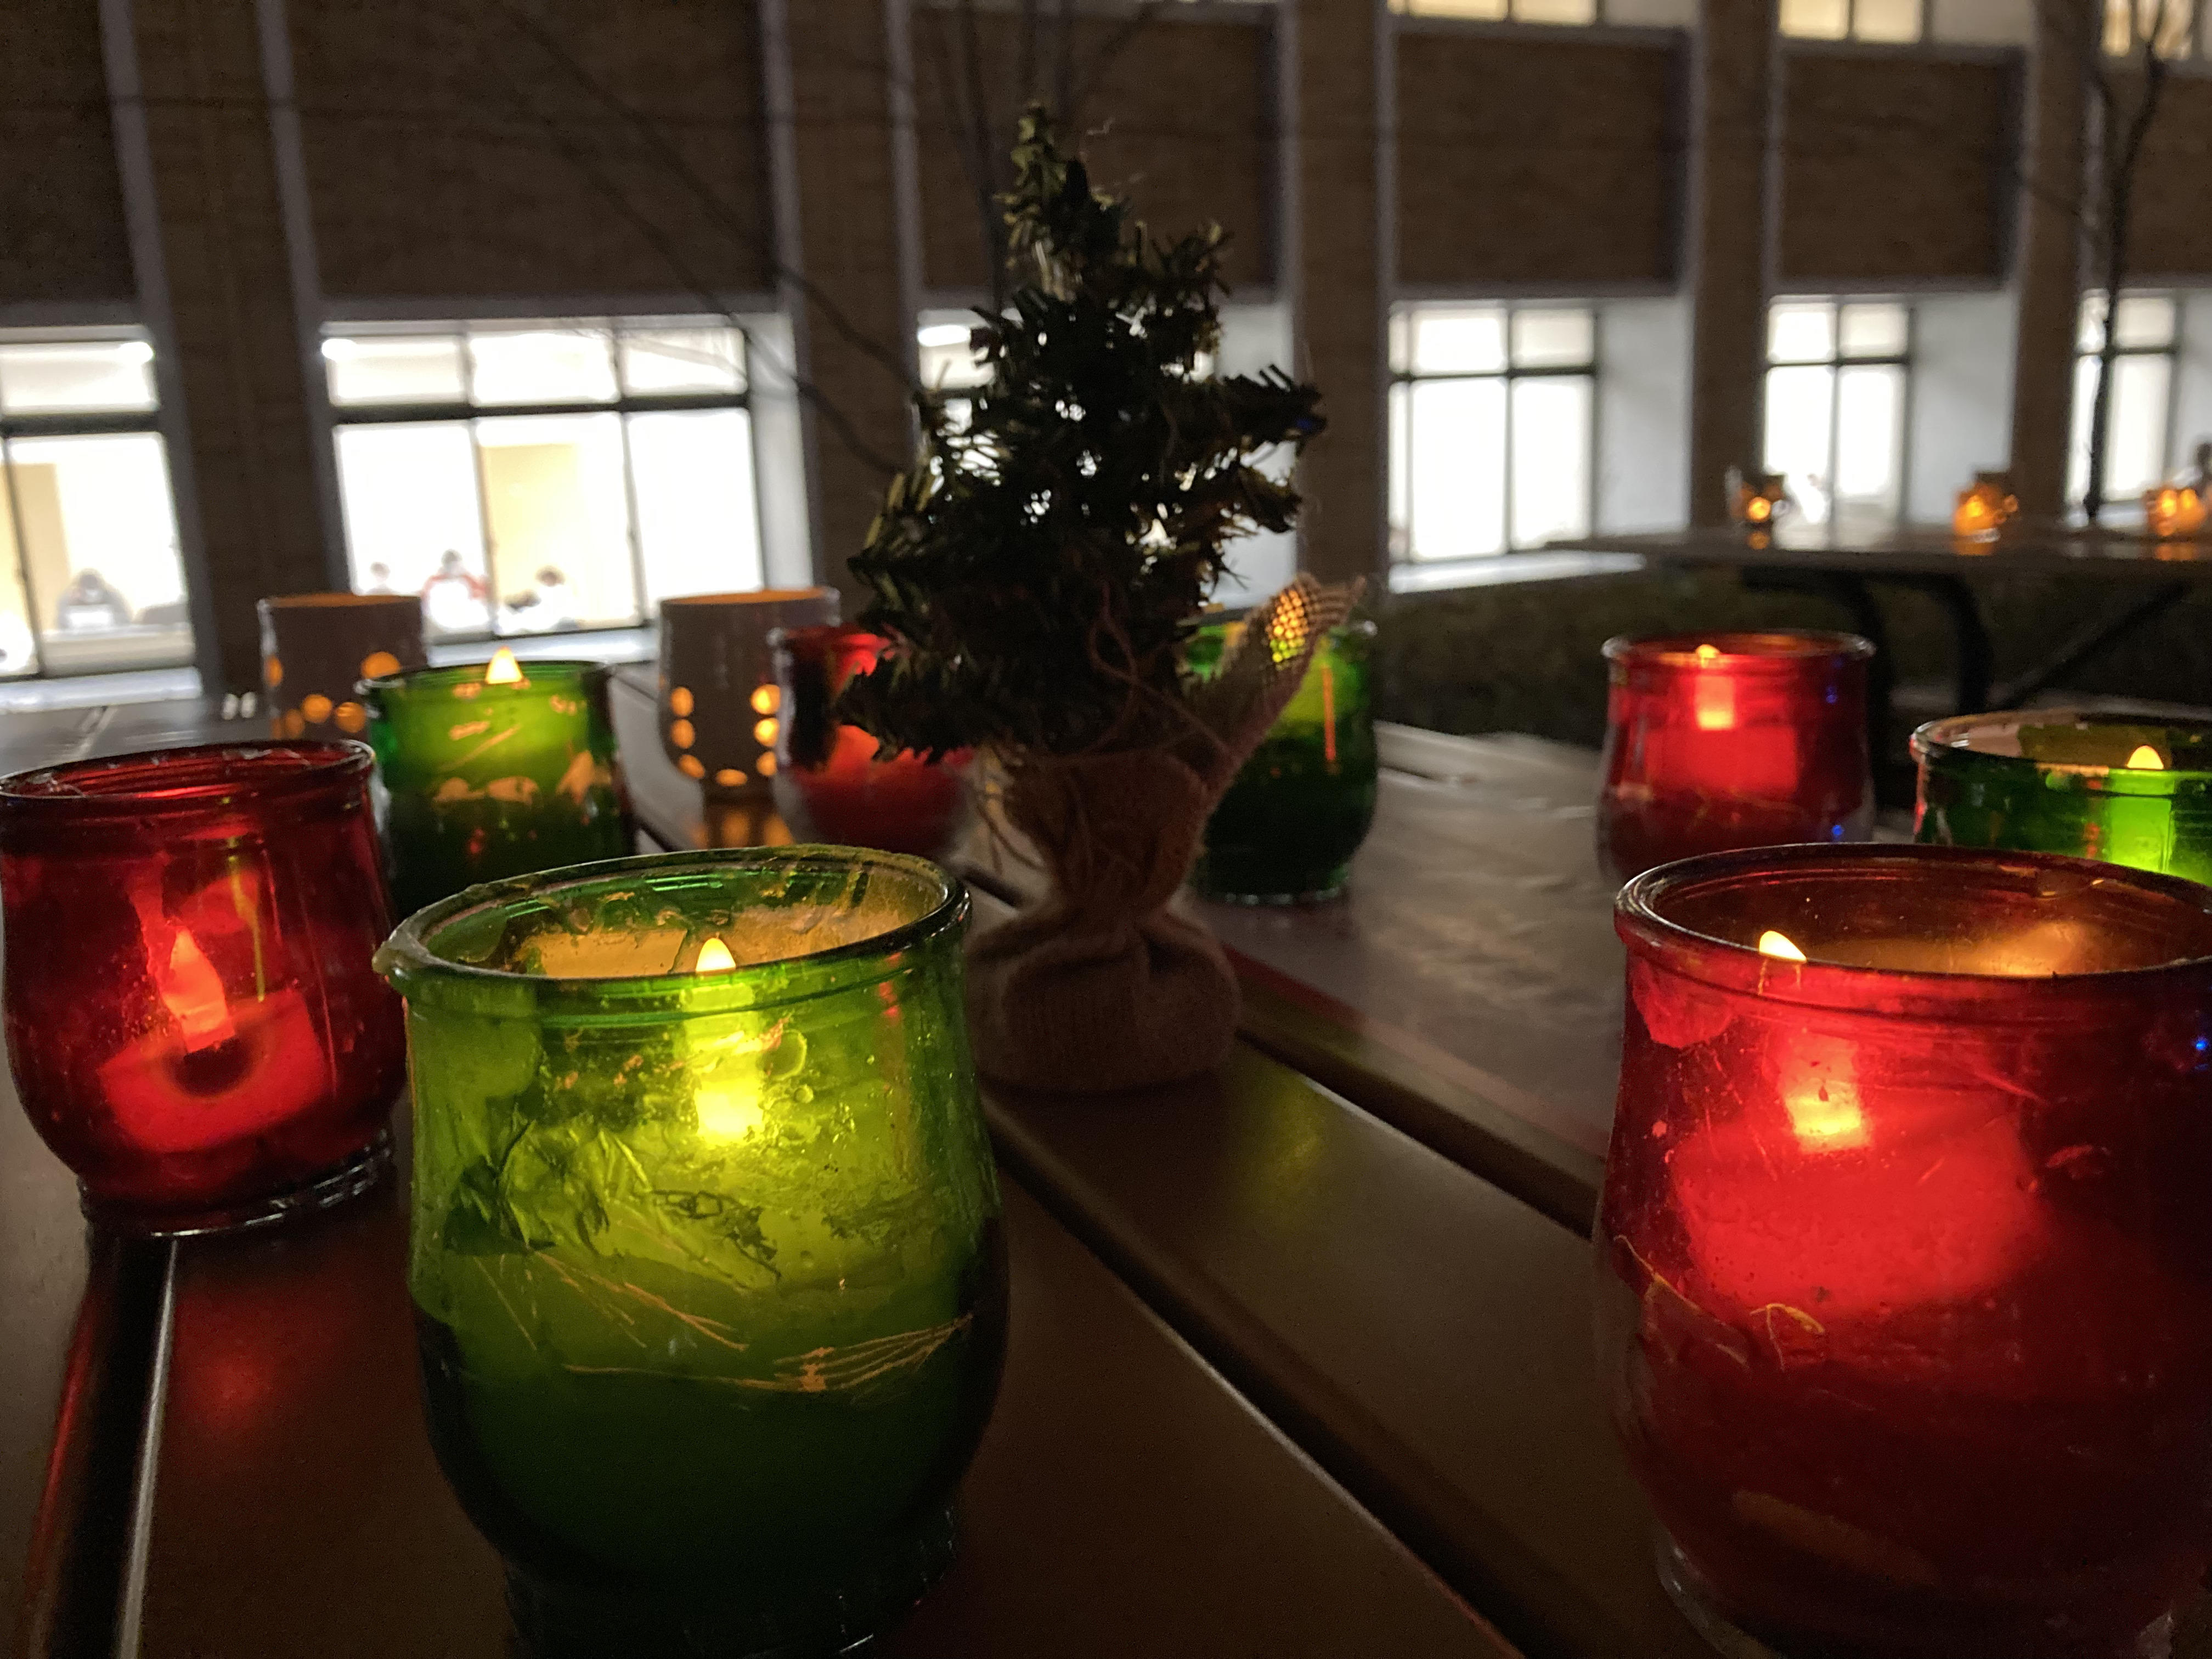 ～ 京都の伝統工芸品 京焼・清水焼の灯りと学生が制作したプロジェクションマッピングで幻想的なクリスマス空間を演出 ～ ライトアップイベント『冬灯夜（とうとうや）』を開催